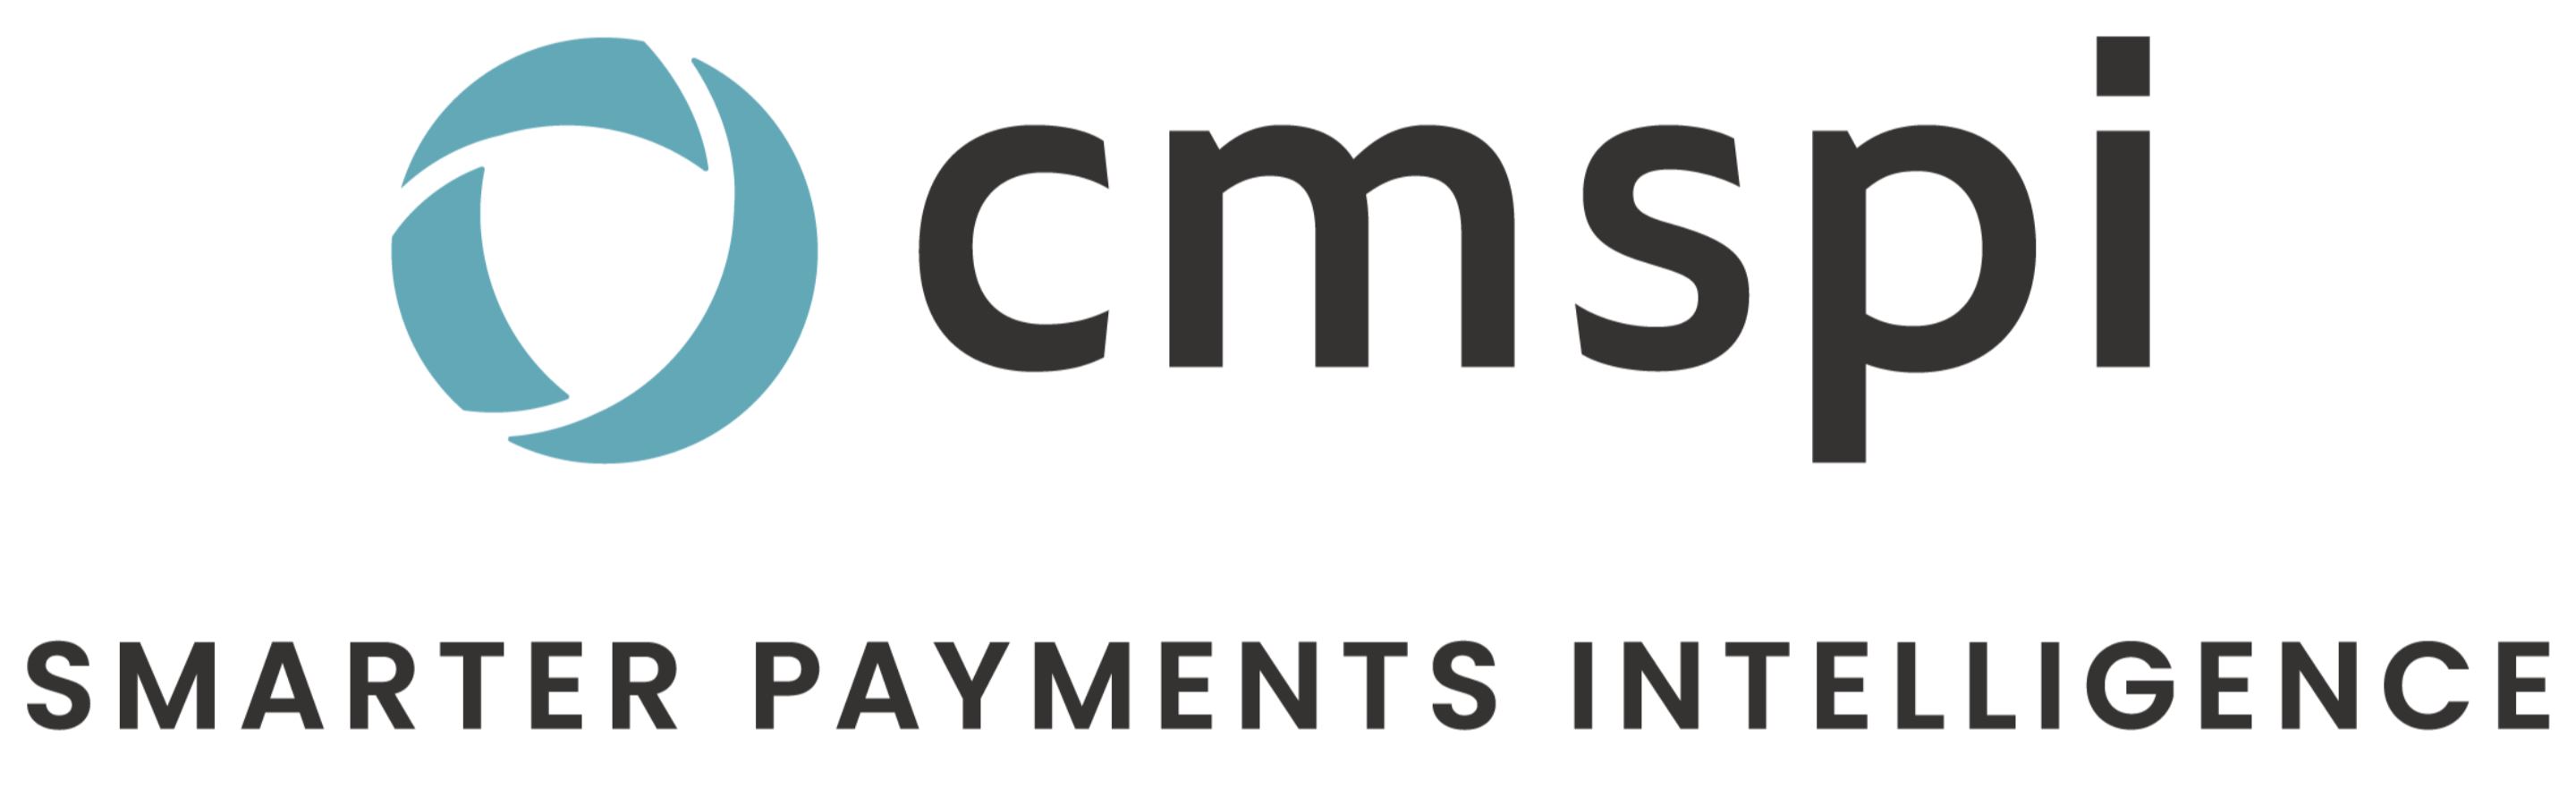 CMSPI, Smarter Payments Intelligence